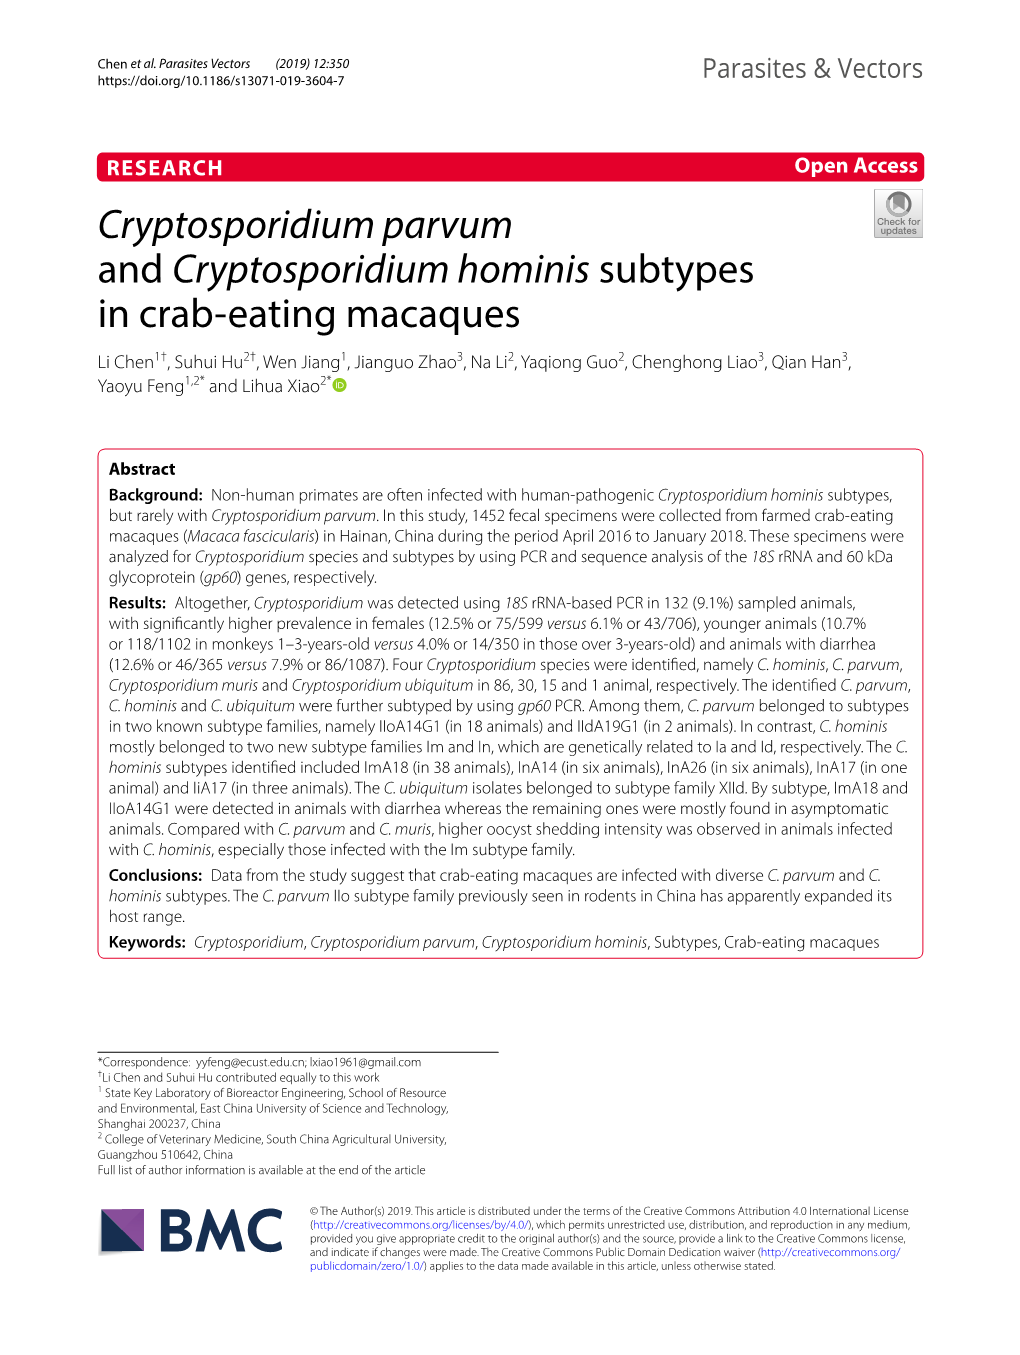 Cryptosporidium Parvum and Cryptosporidium Hominis Subtypes in Crab-Eating Macaques